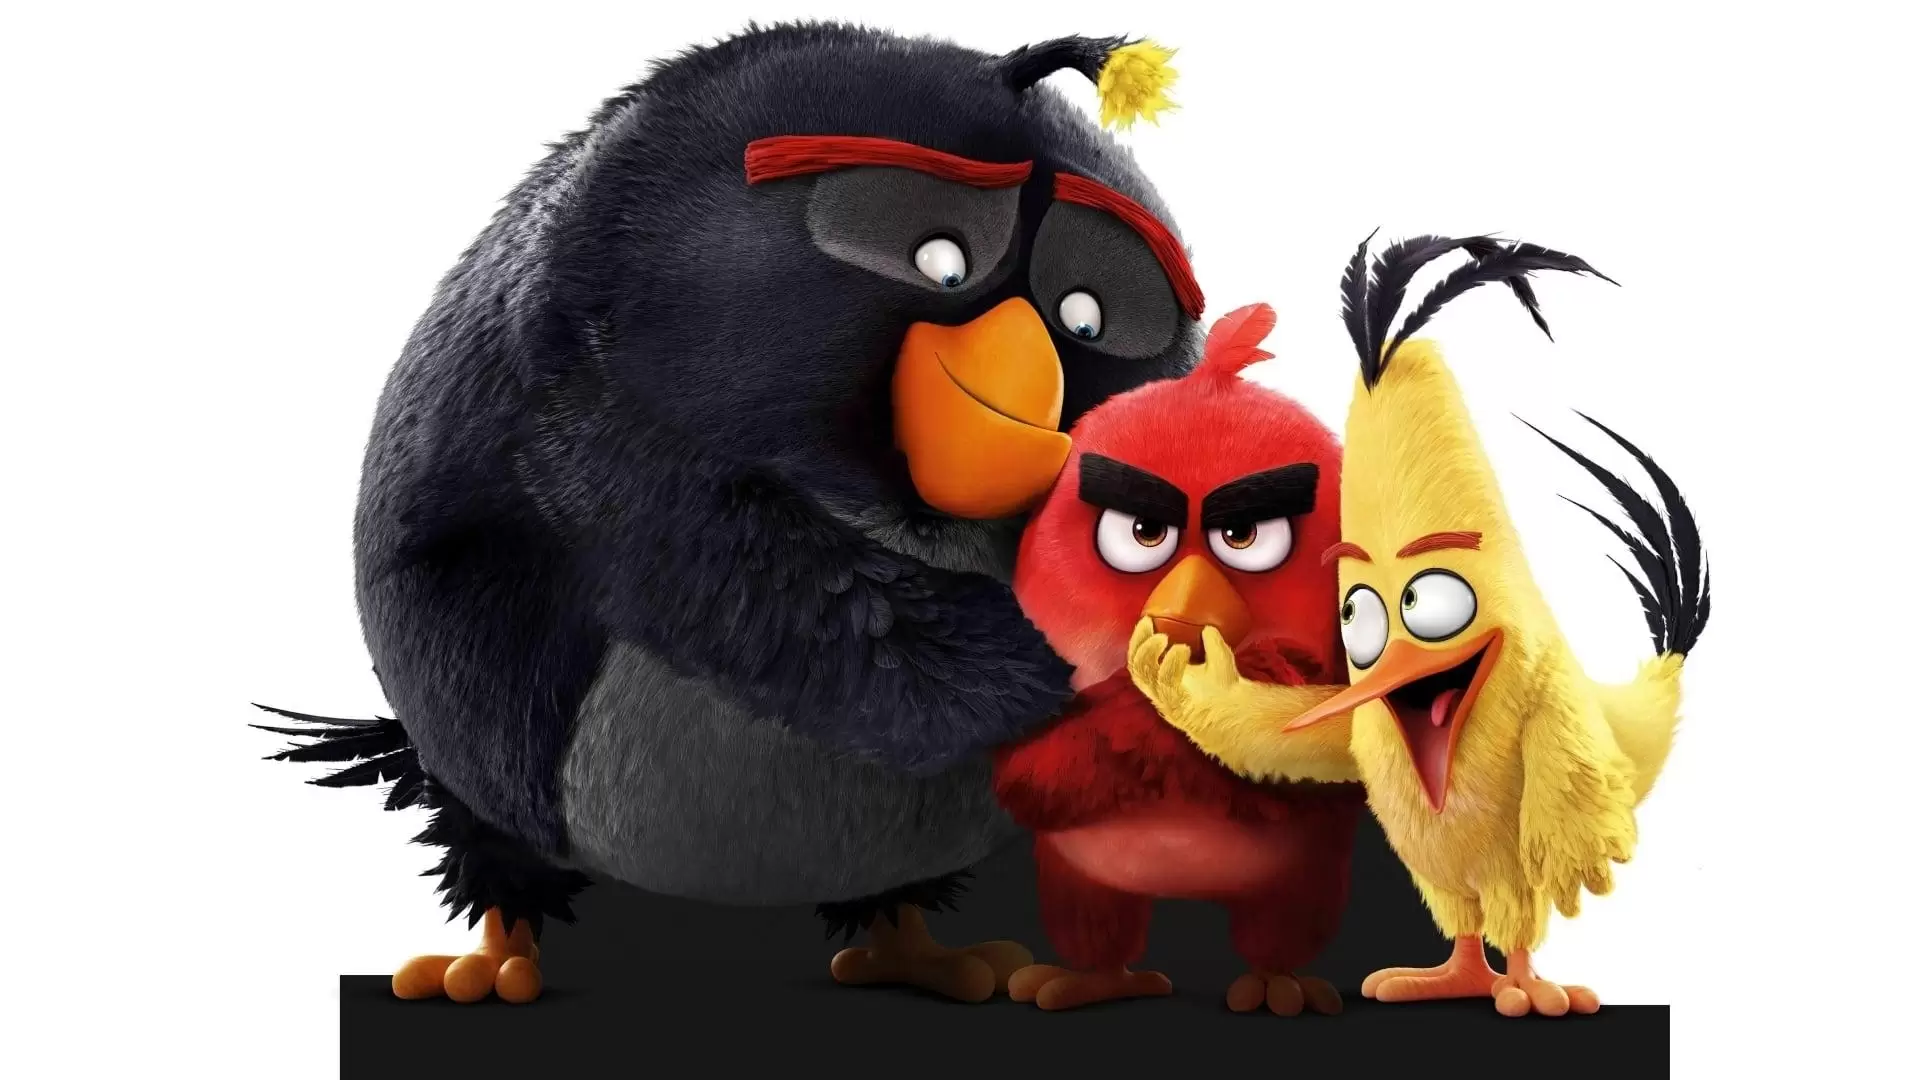 دانلود انیمیشن The Angry Birds 2016 (پرندگان خشمگین) با زیرنویس فارسی و تماشای آنلاین